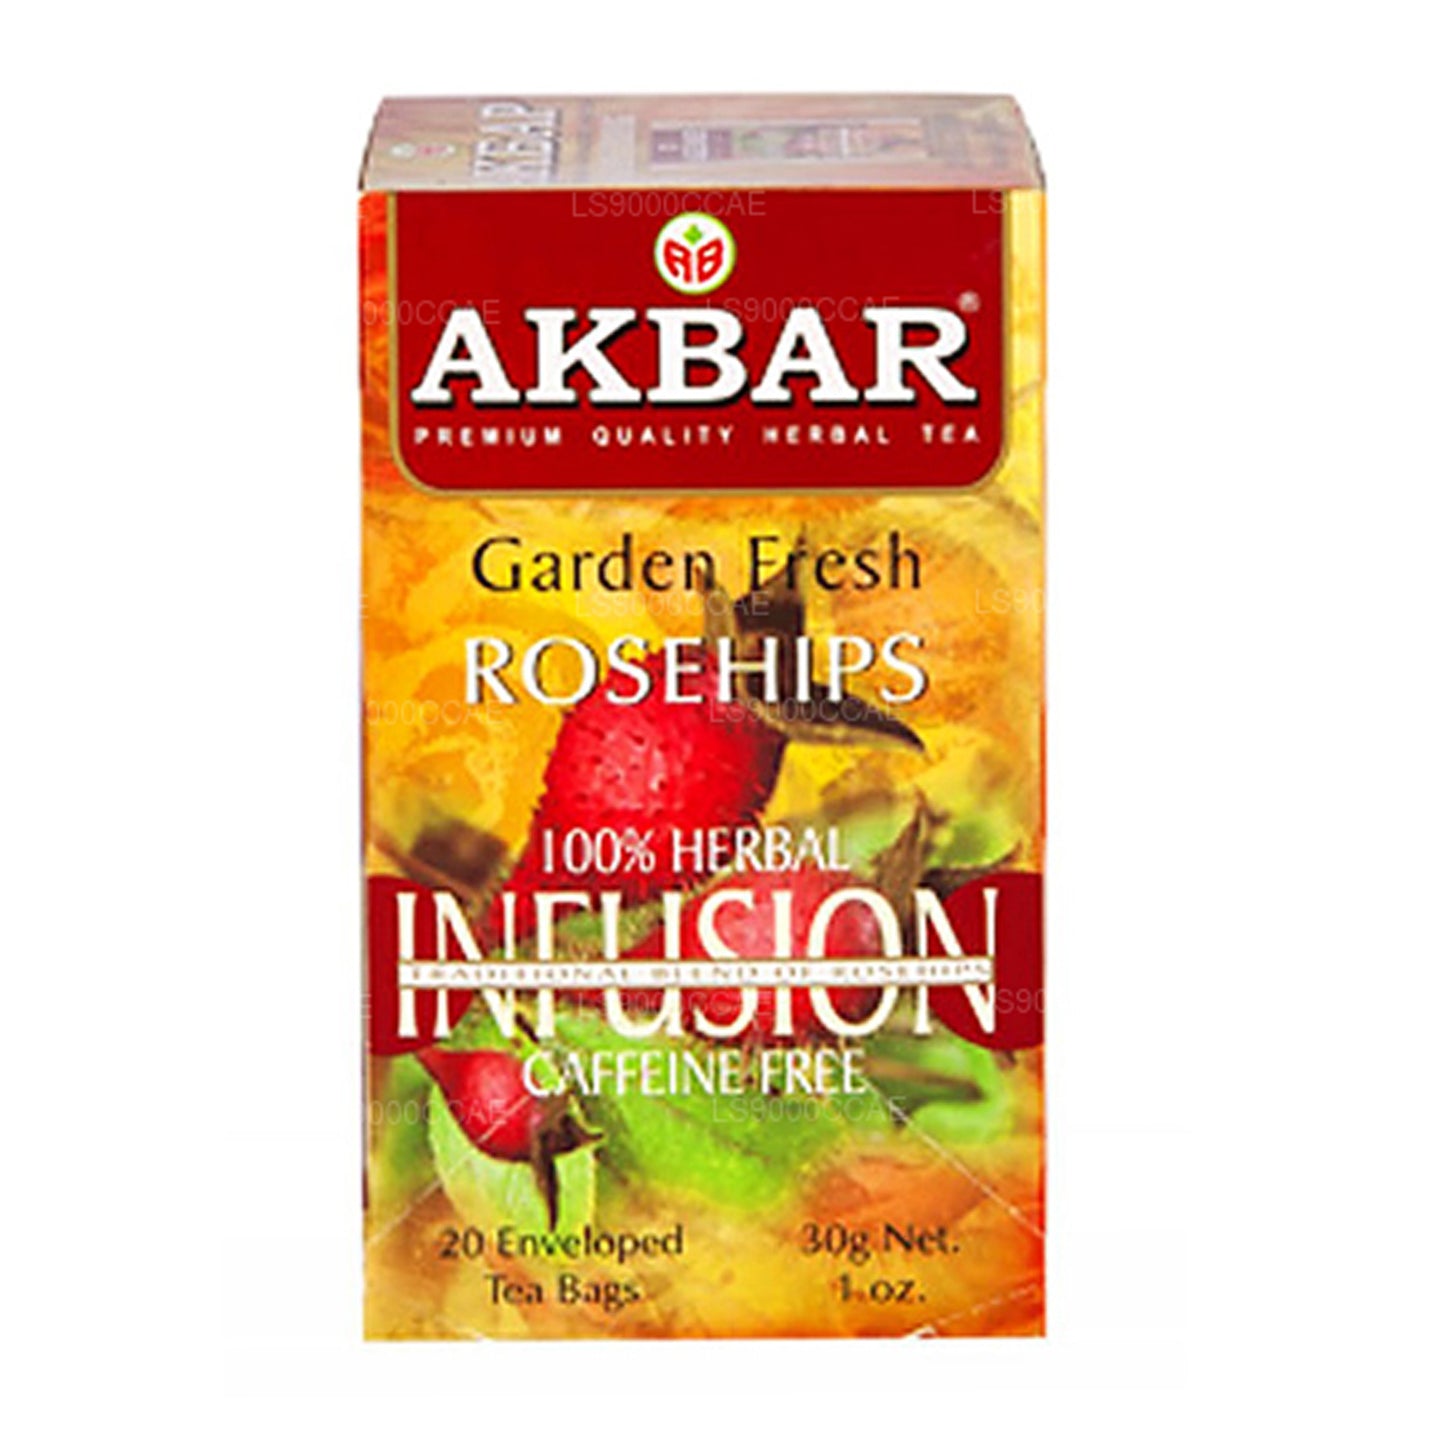 Akbar Garden Fresh Rosehips 20 bustine di tè (30g)